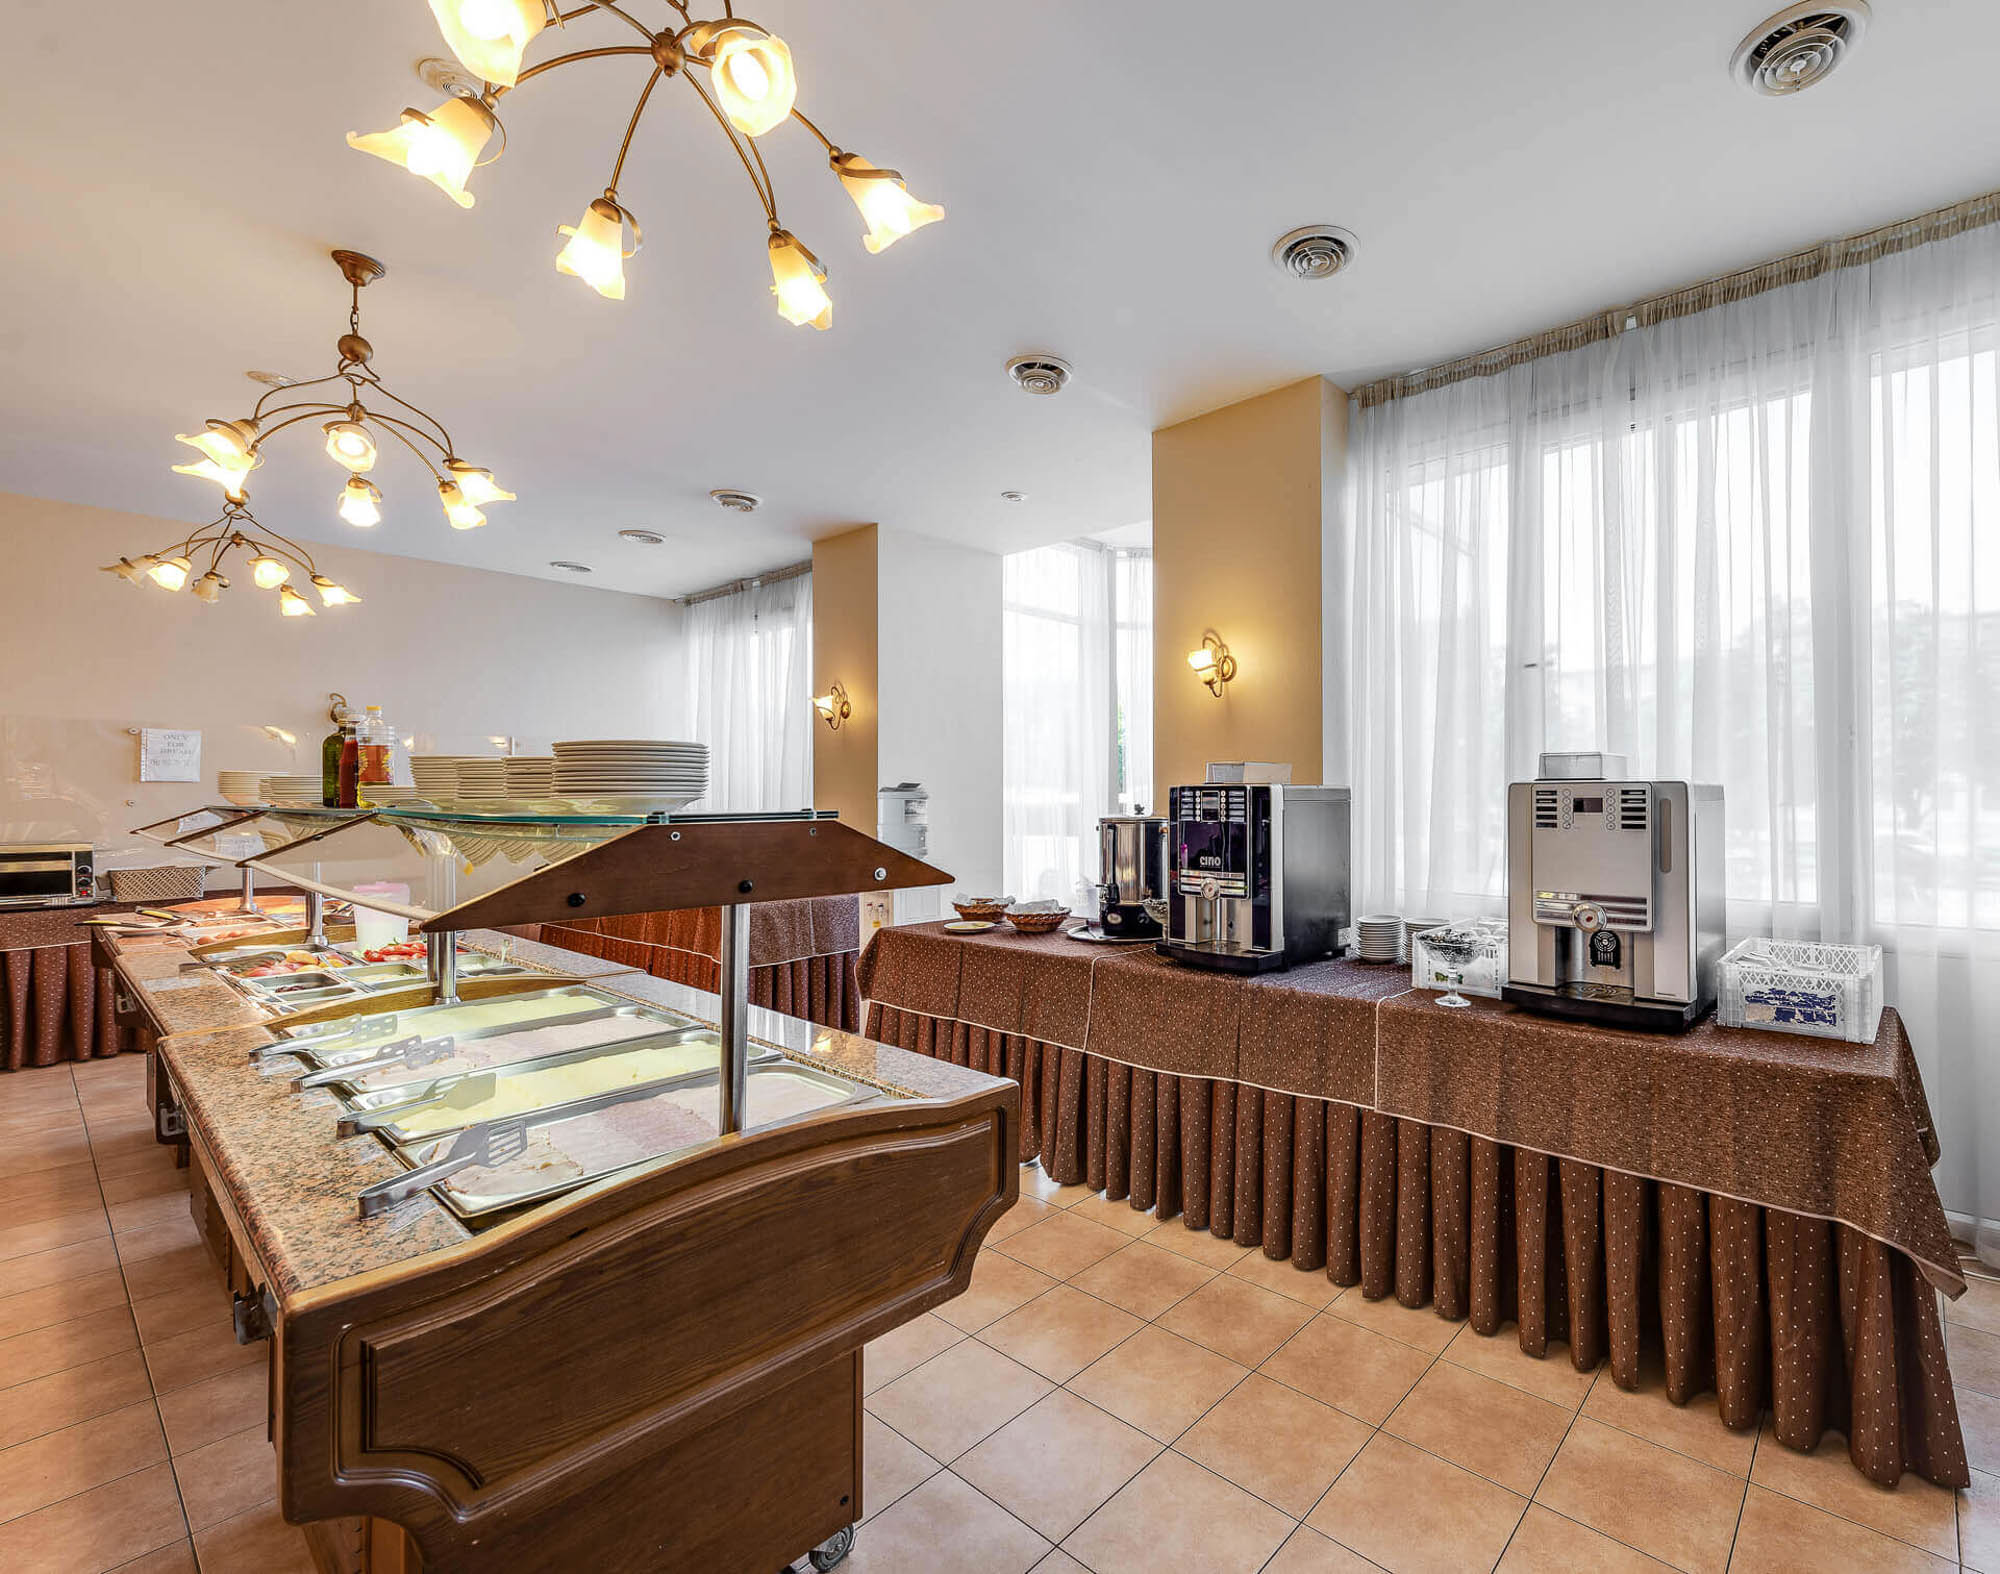 Гостиницы санкт петербурга в центре с завтраком недорого цены